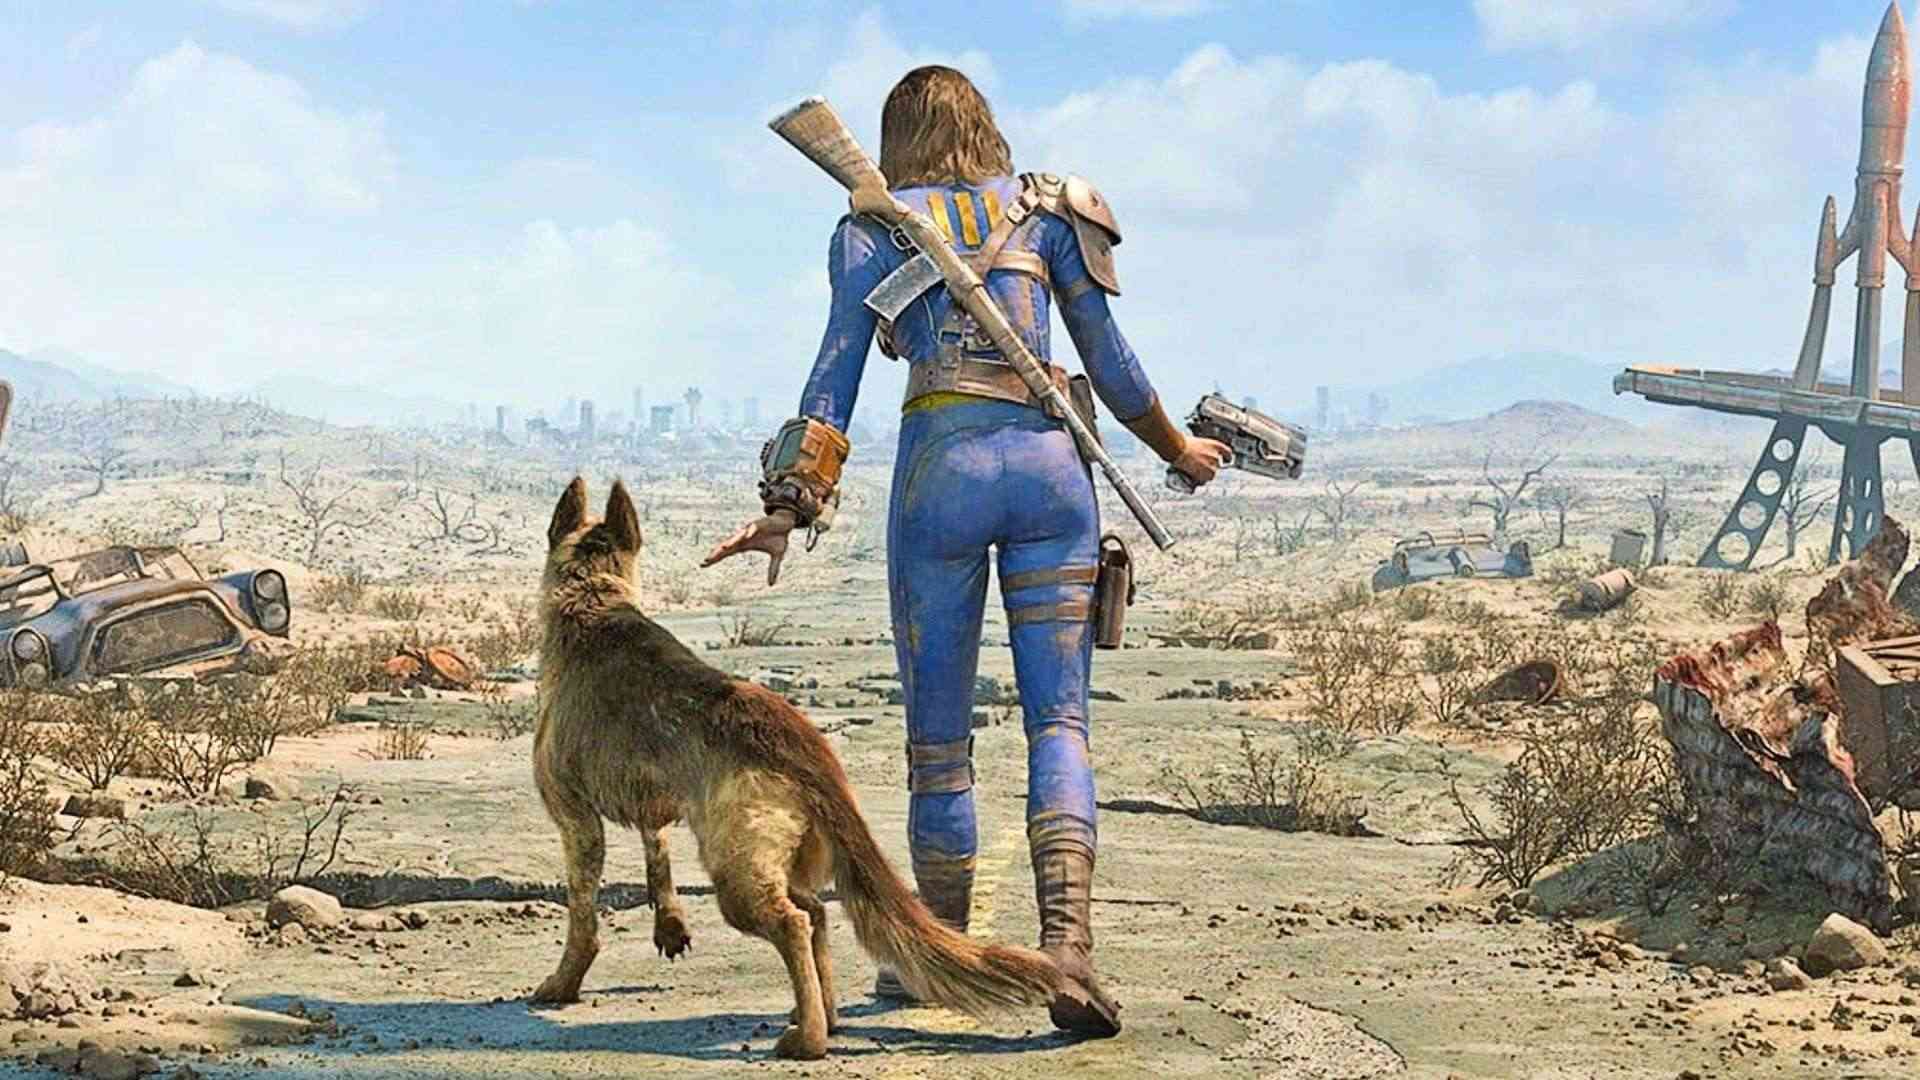 Lượng người chơi Fallout tăng trở lại sau màn ra mắt của TV show